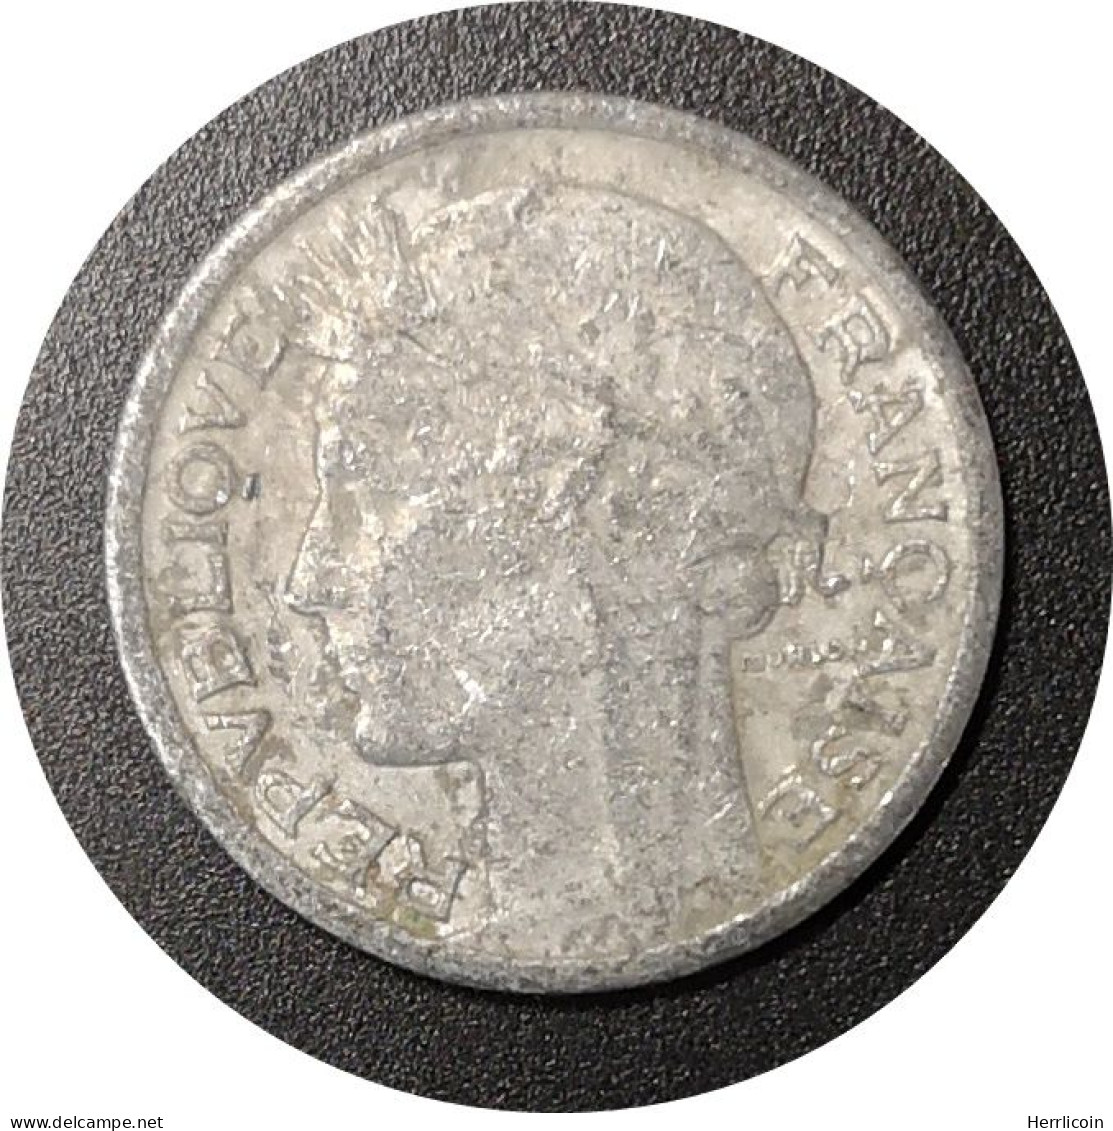 Monnaie France - 1941 - 50 Centimes Morlon Aluminium, Légère (0.7g) - 50 Centimes